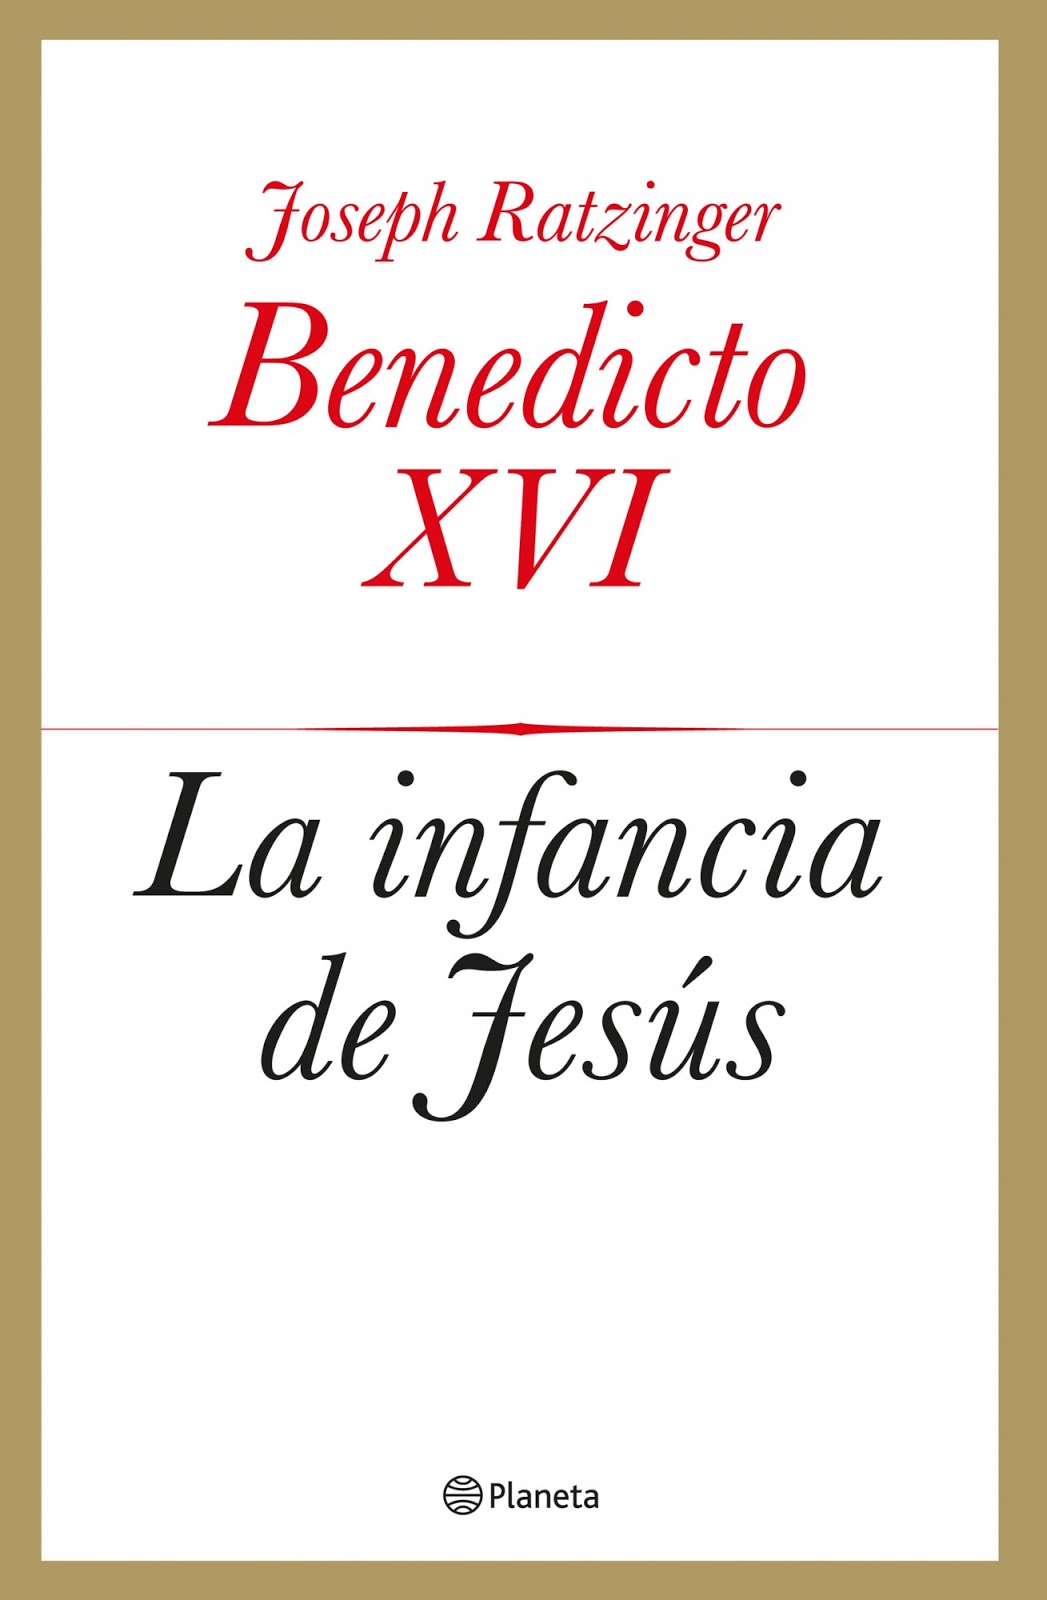 Benedicto Xvi Jesus De Nazaret Iii